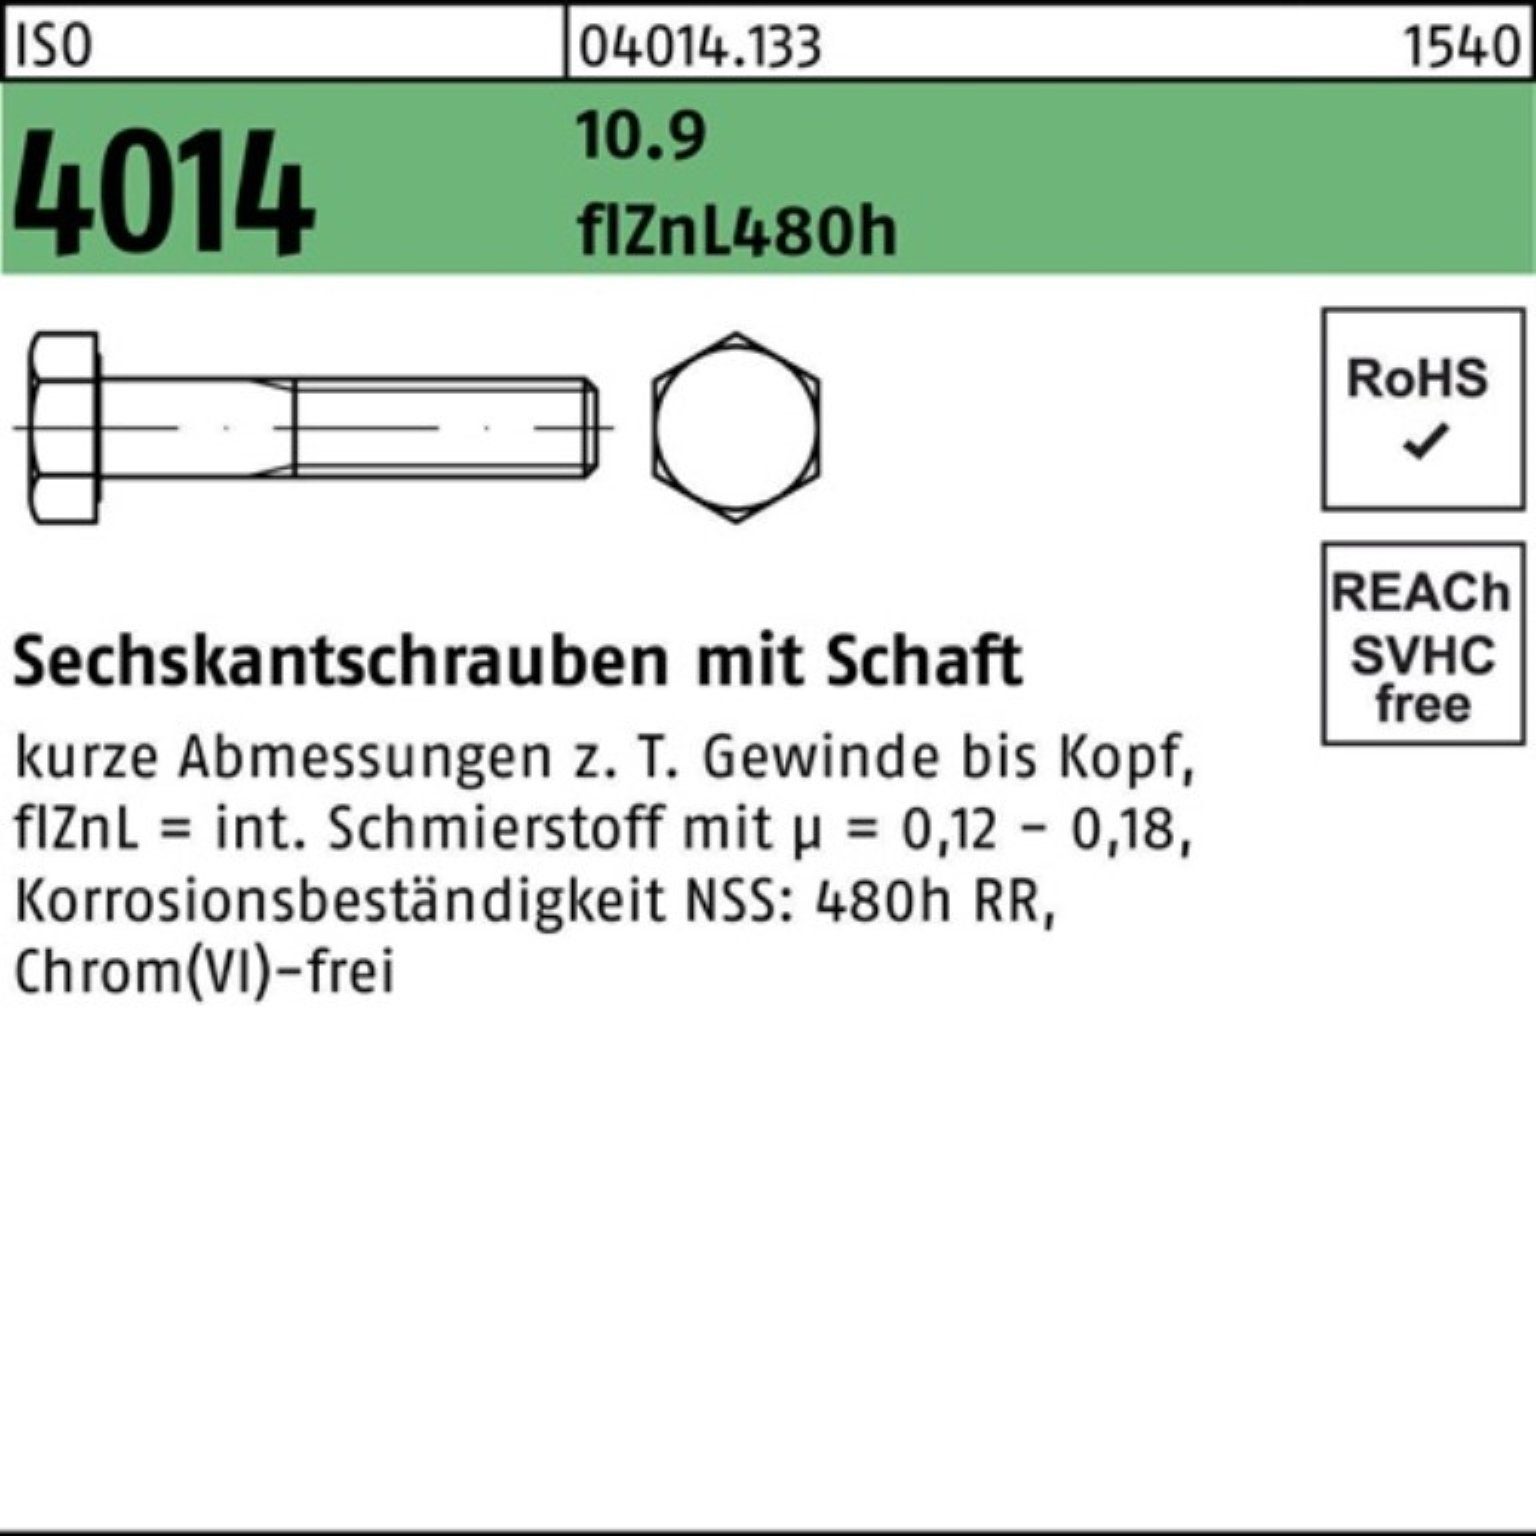 Sechskantschraube Bufab ISO Schaft Sechskantschraube 4014 140 Pack 100er 10.9 M16x zinklamelle